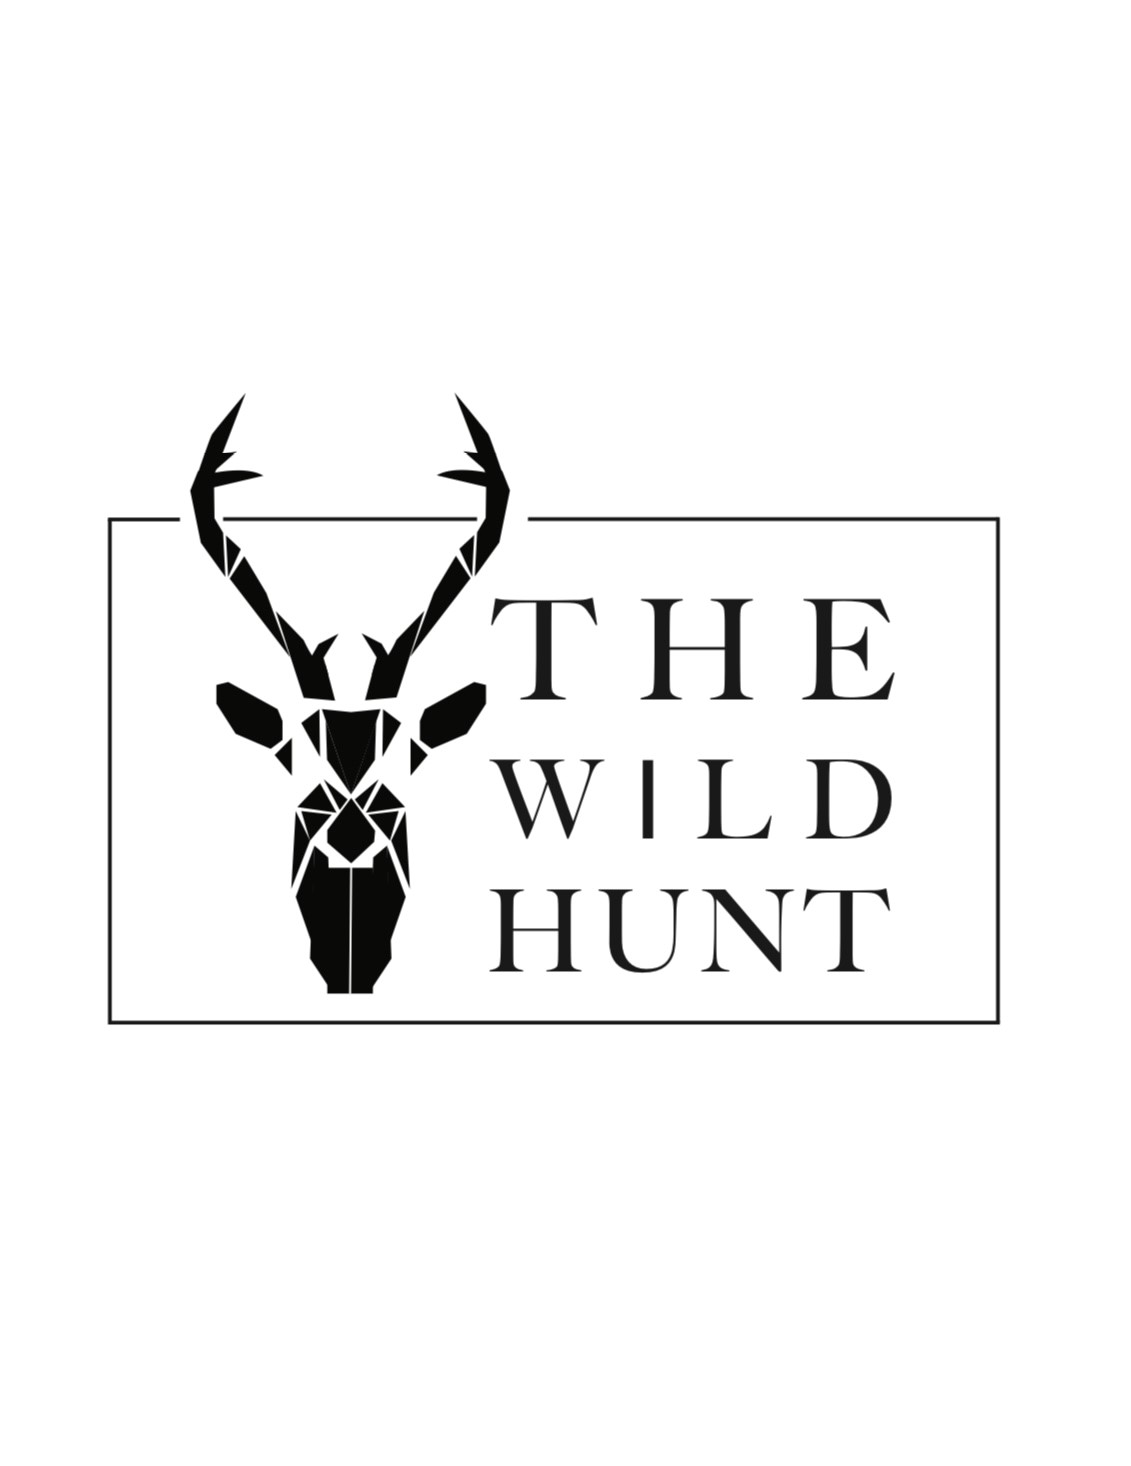  The Wild Hunt 3.0